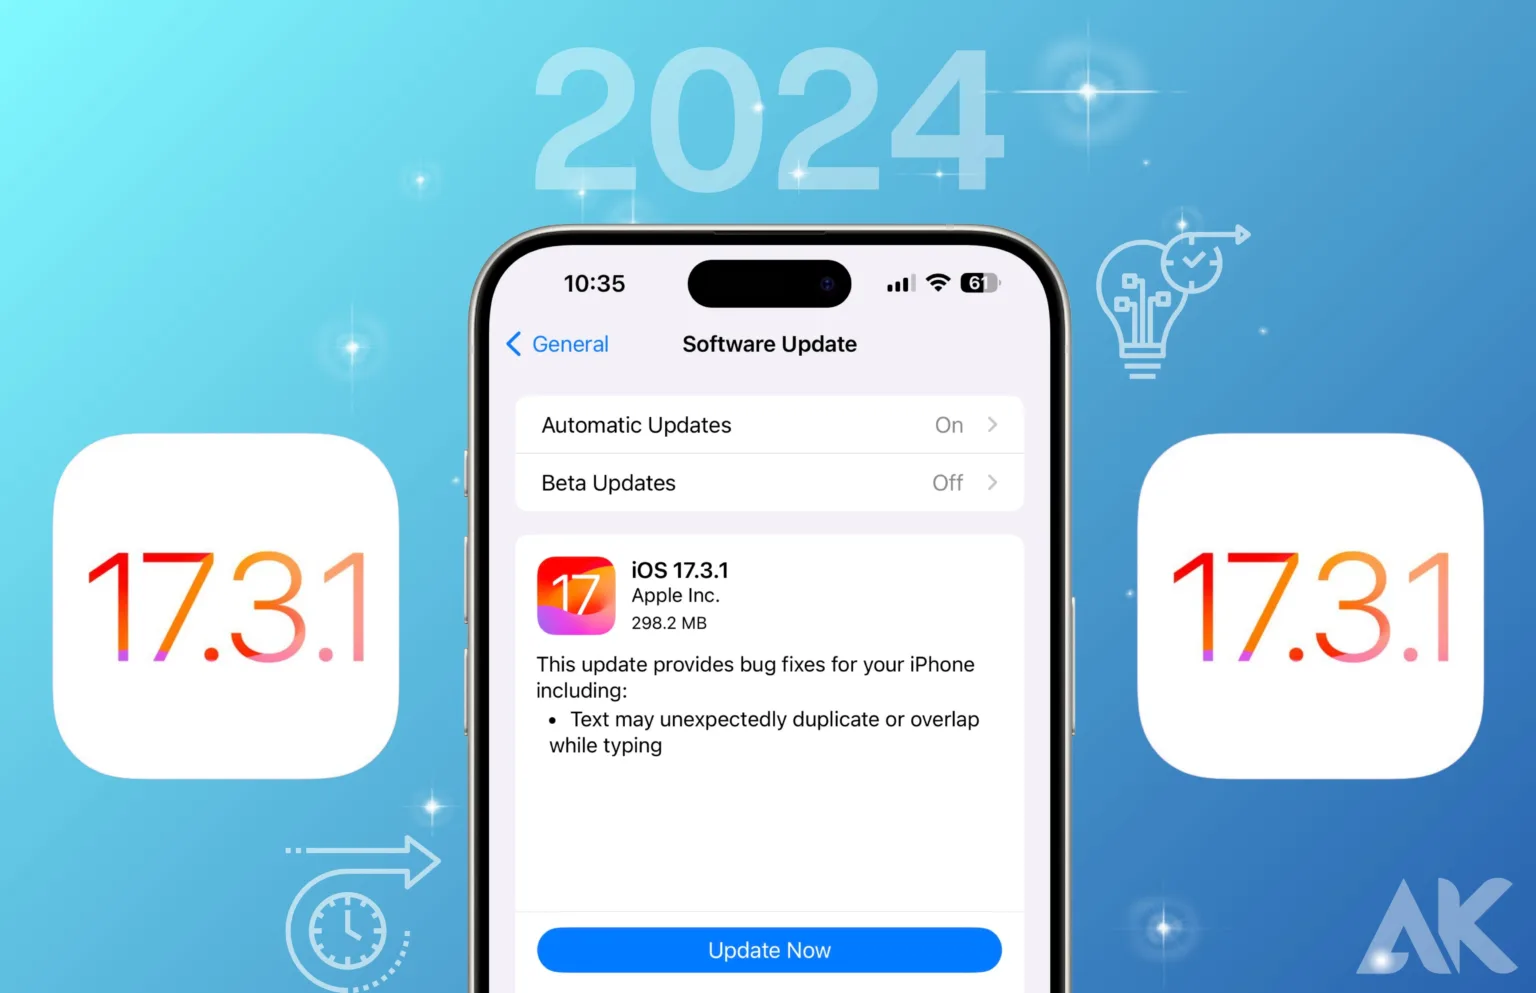 Apple iOS 17.3.1 Beta – A Glimpse into the Future in 2024